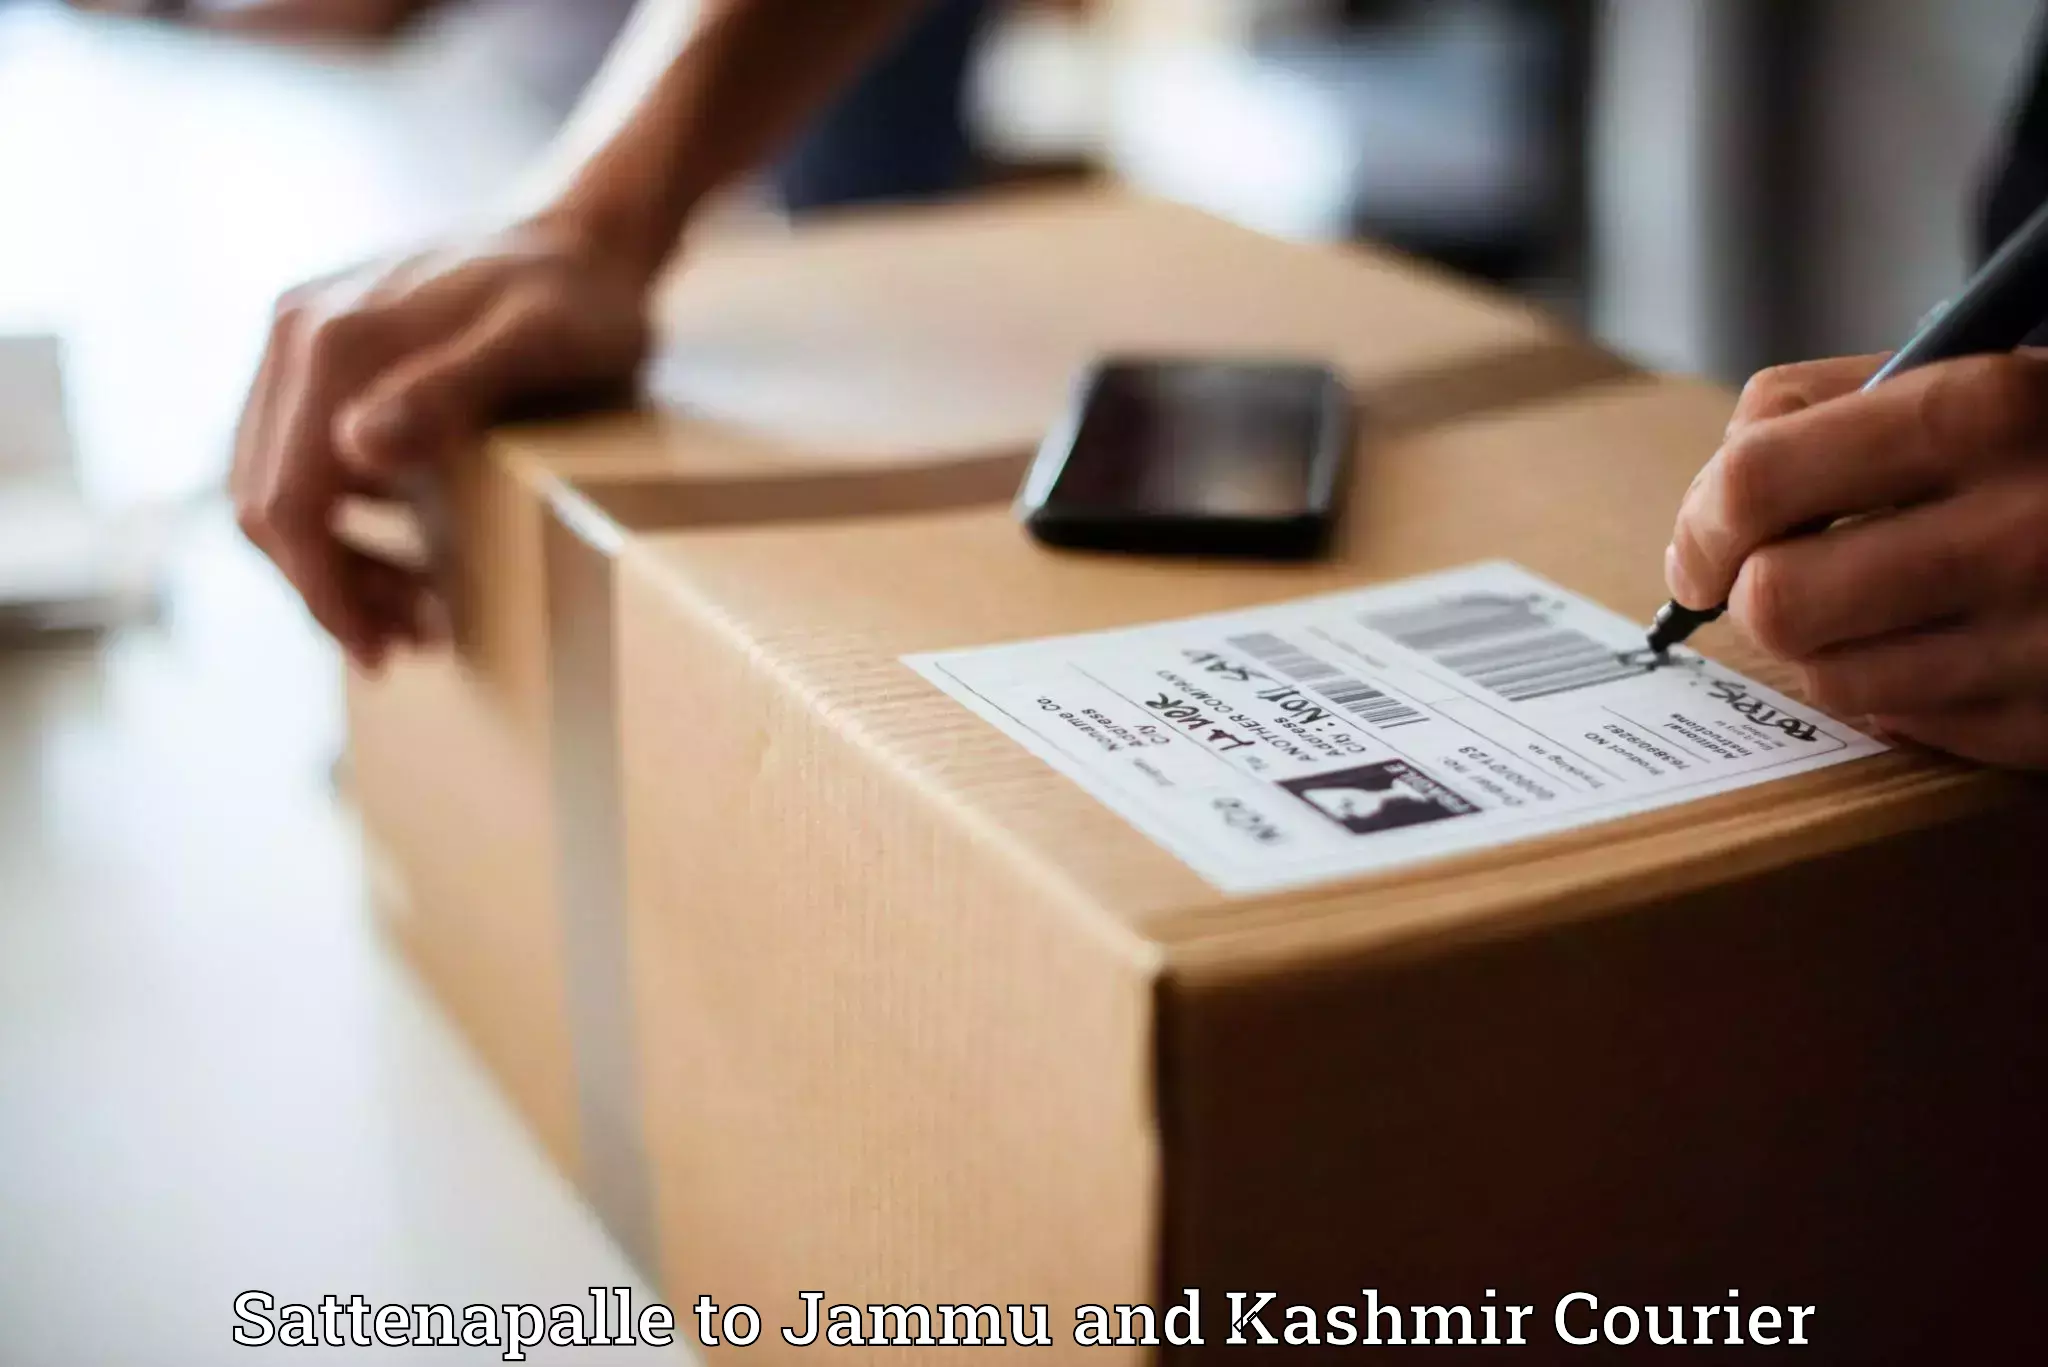 Flexible parcel services Sattenapalle to Srinagar Kashmir